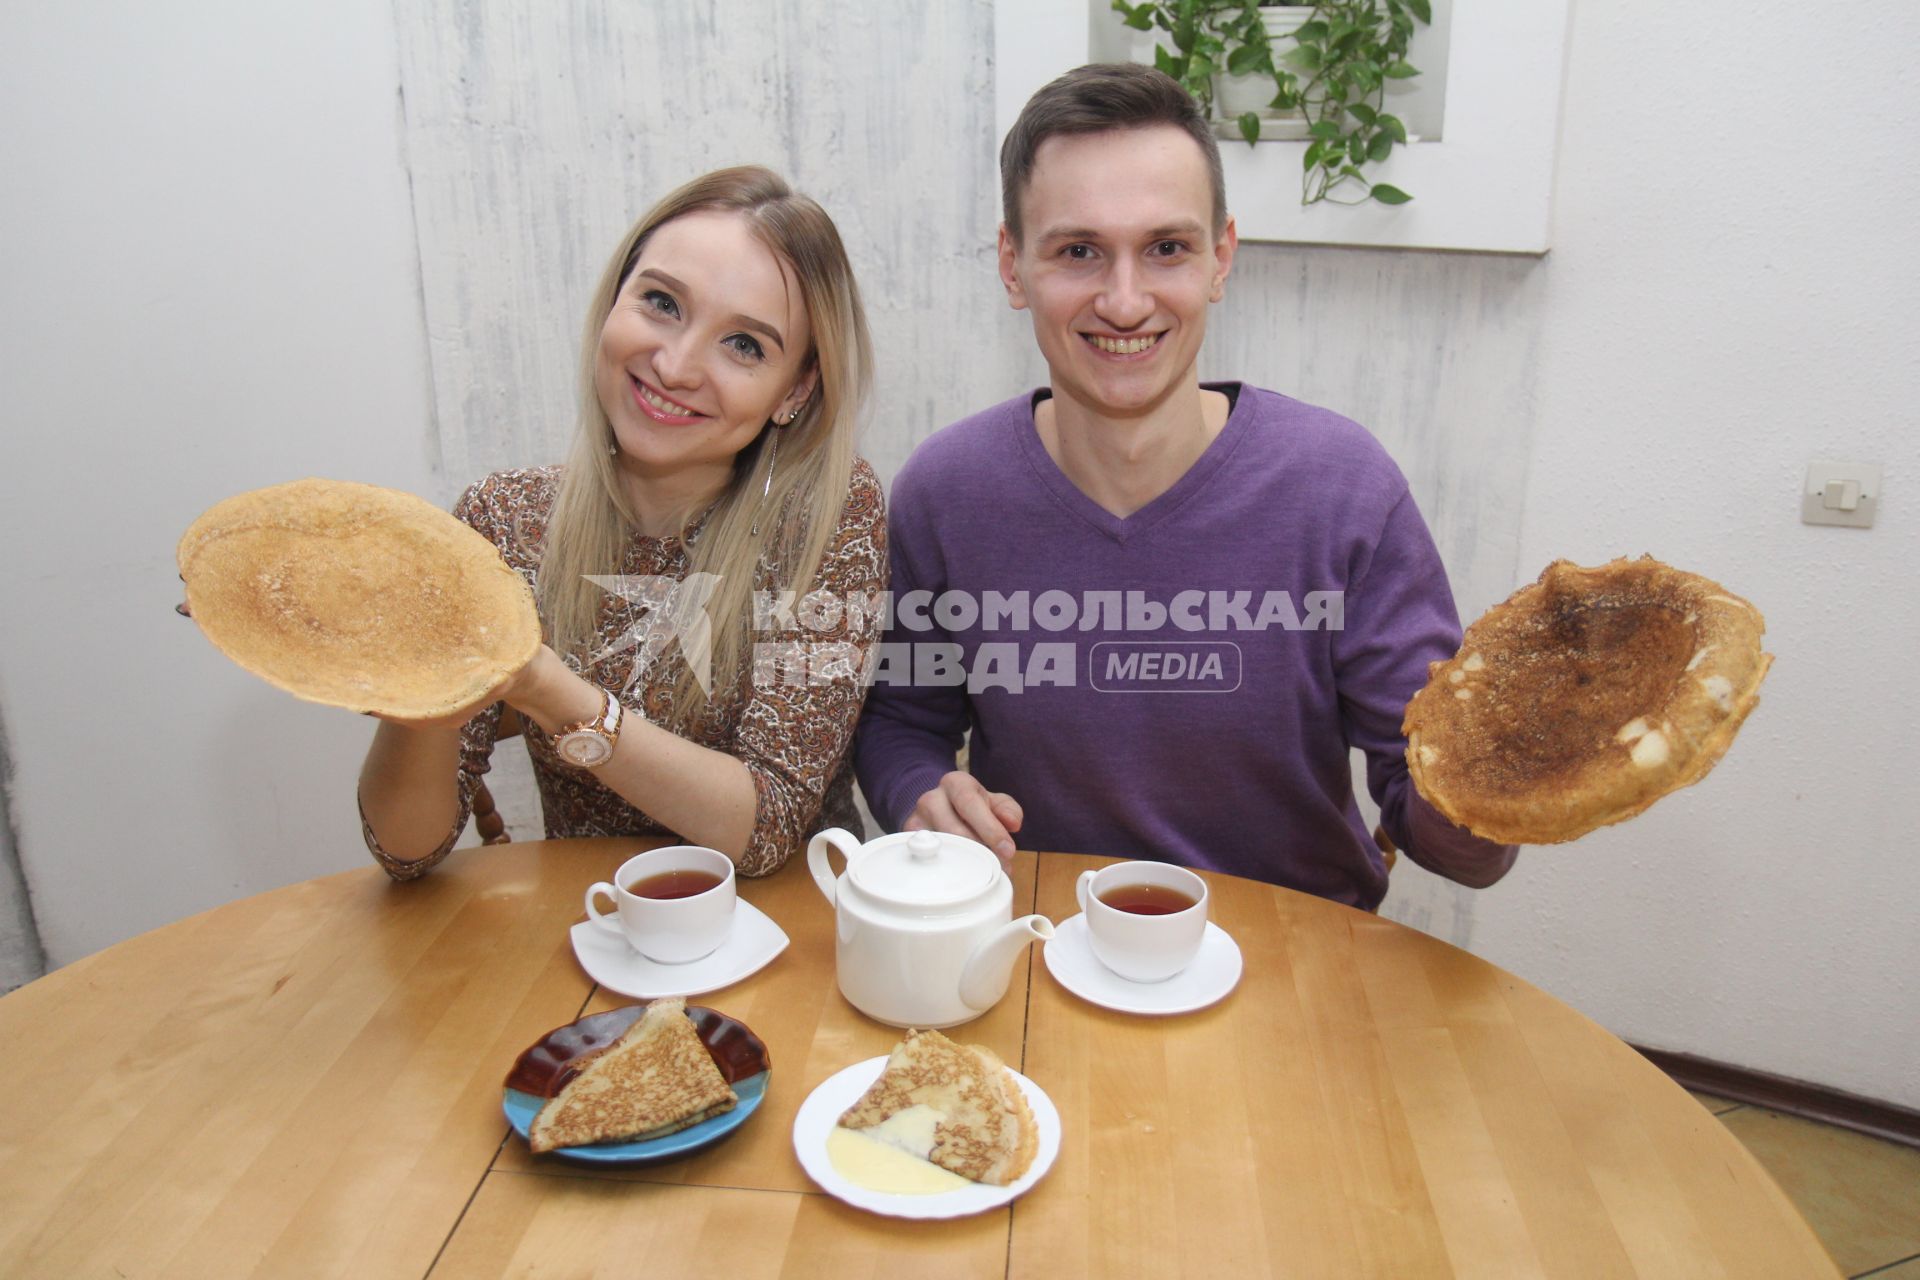 Иркутск. Молодой человек и девушка пьют чай с блинами.